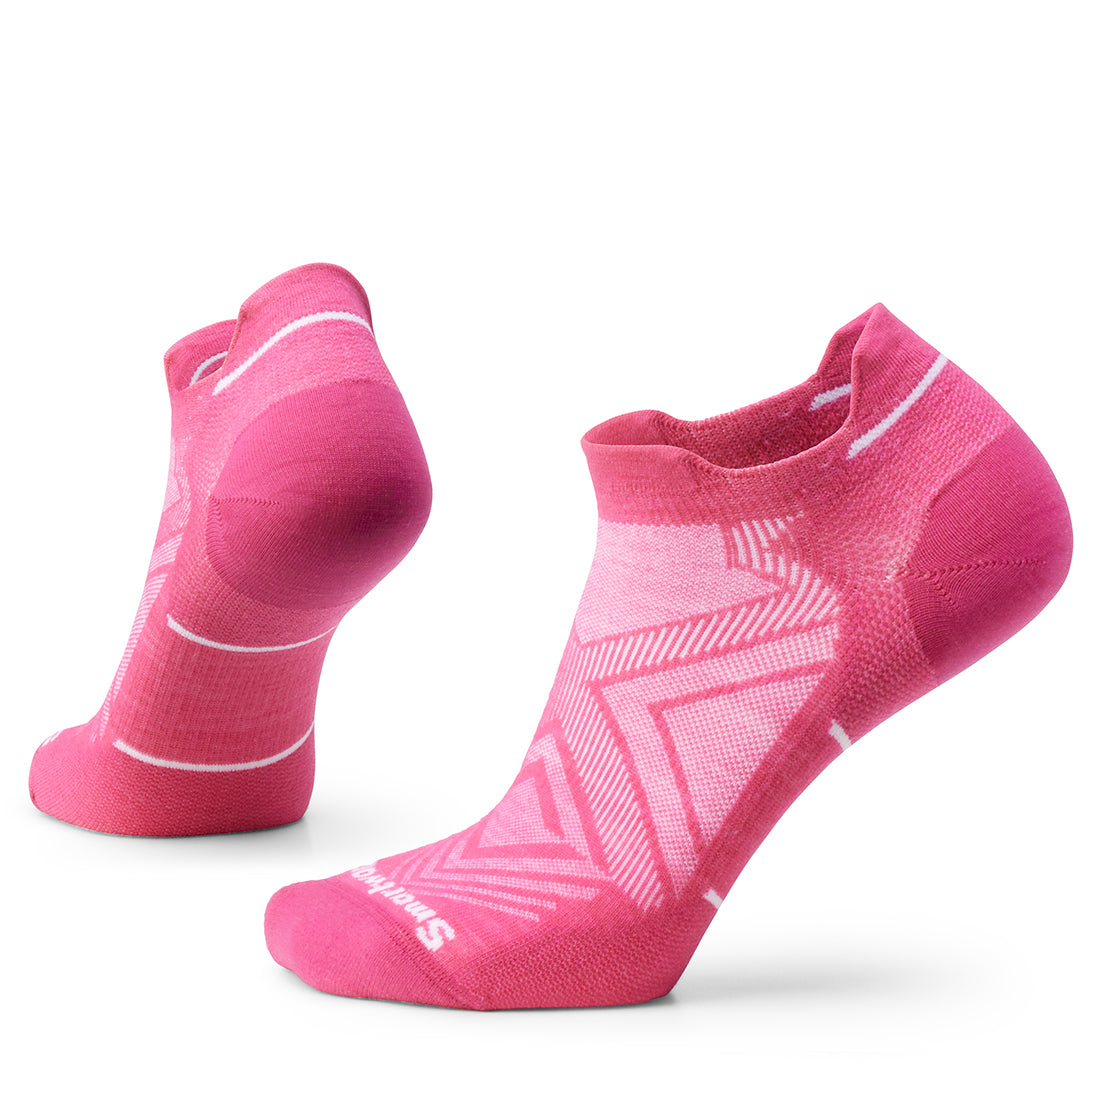 Smartwool Women's Run Zero Cushion Low Ankle Socks - Power Pink